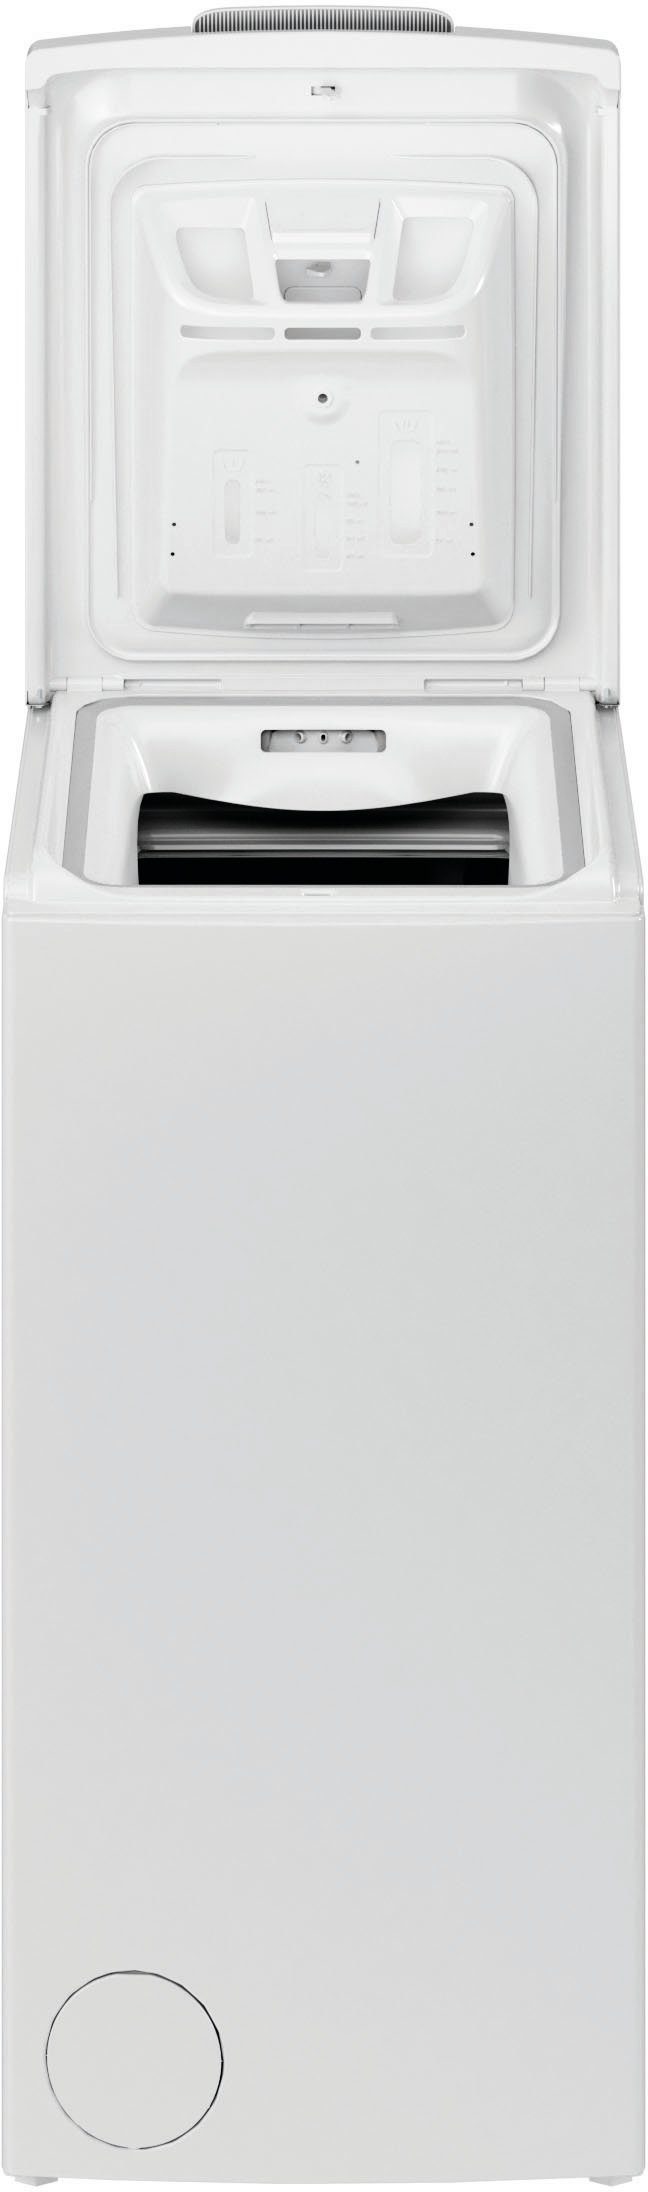 Privileg Waschmaschine Toplader PWT kg, C6512P U/min 1200 6,5 N